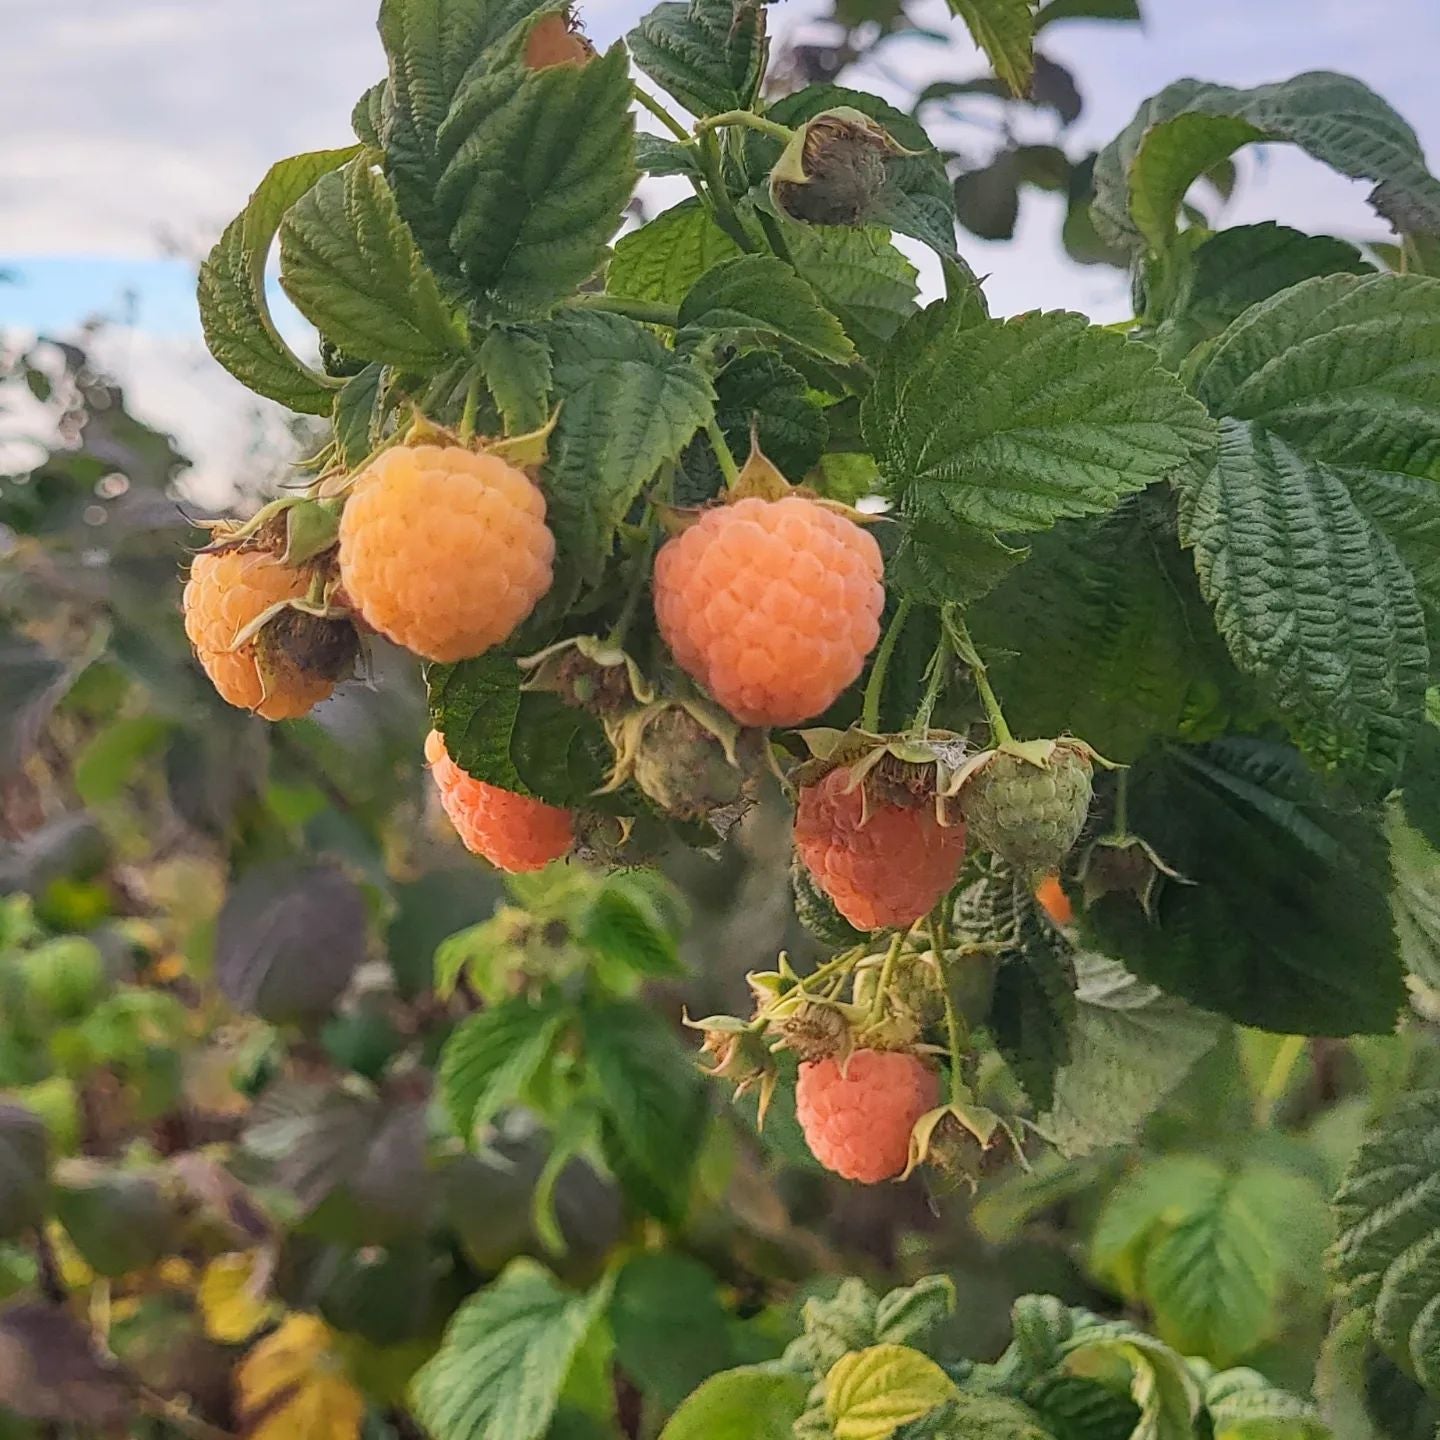 Gul Efterårshindbær – Rubus idaeus `Fallgold´ er en skøn plante til haven og får de lækreste hindbær i efteråret her i gule og orange nuancer og store bær samt grønne blade og løv